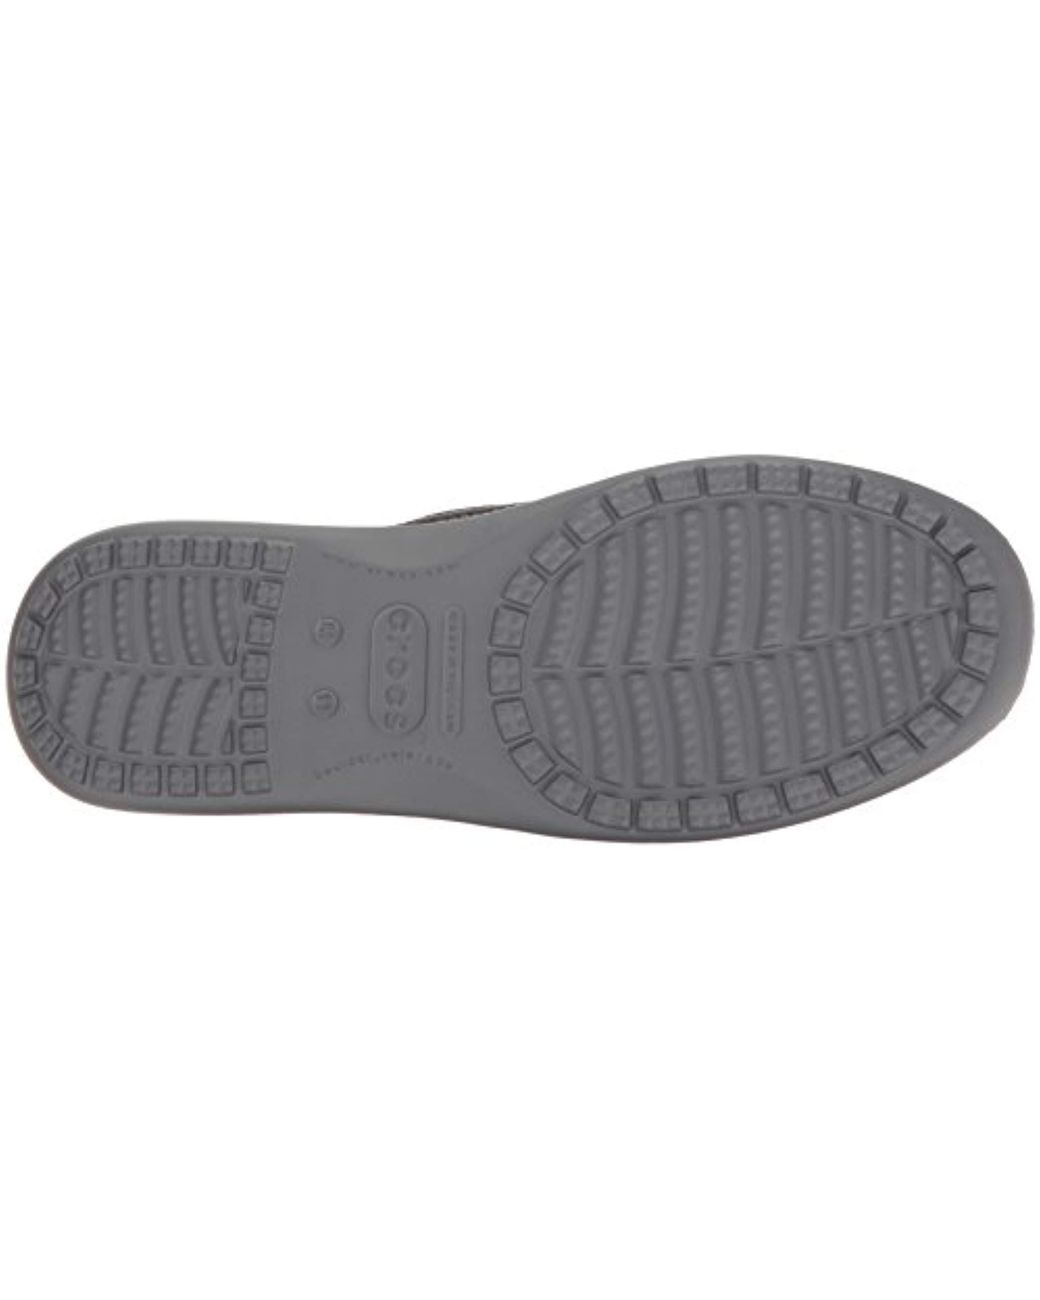 Crocs Mens Santa Cruz 2 Luxe Loafer 